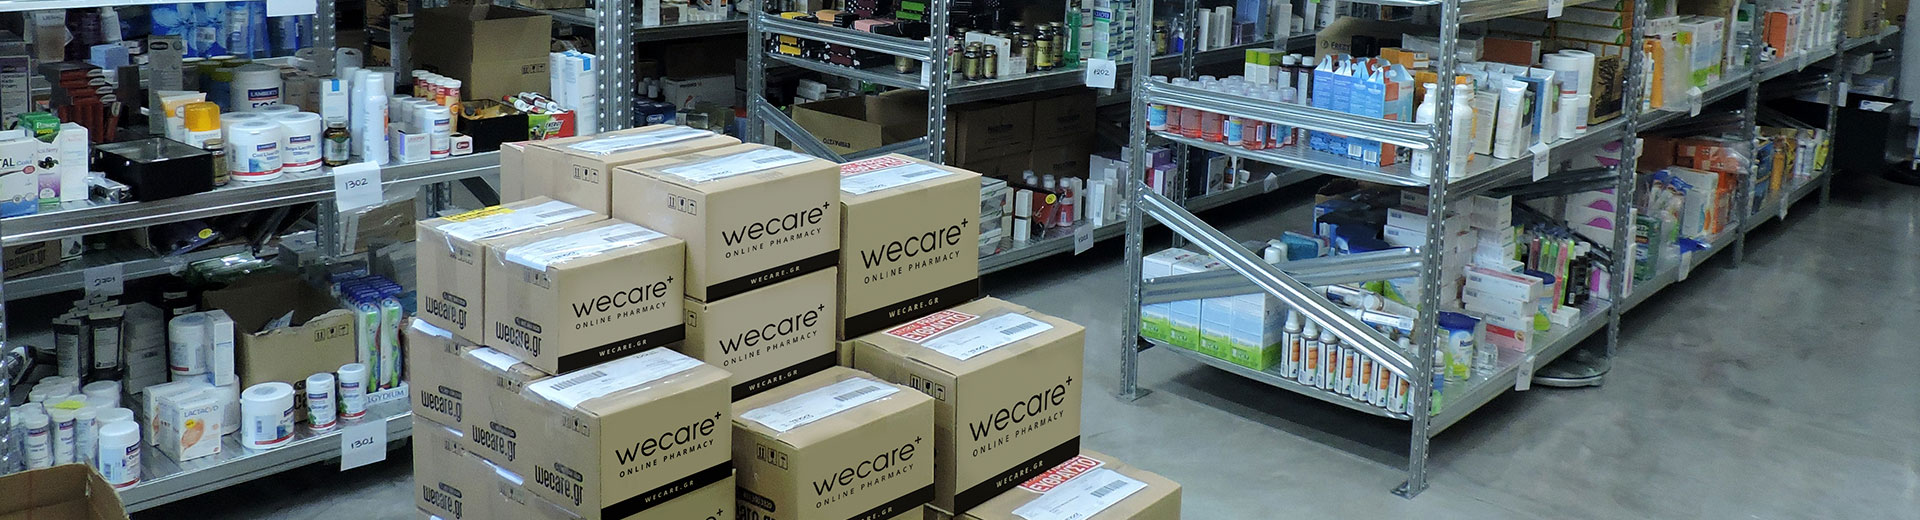 Wecare - Hohe Produktlagerungs- und Wartungsstandards